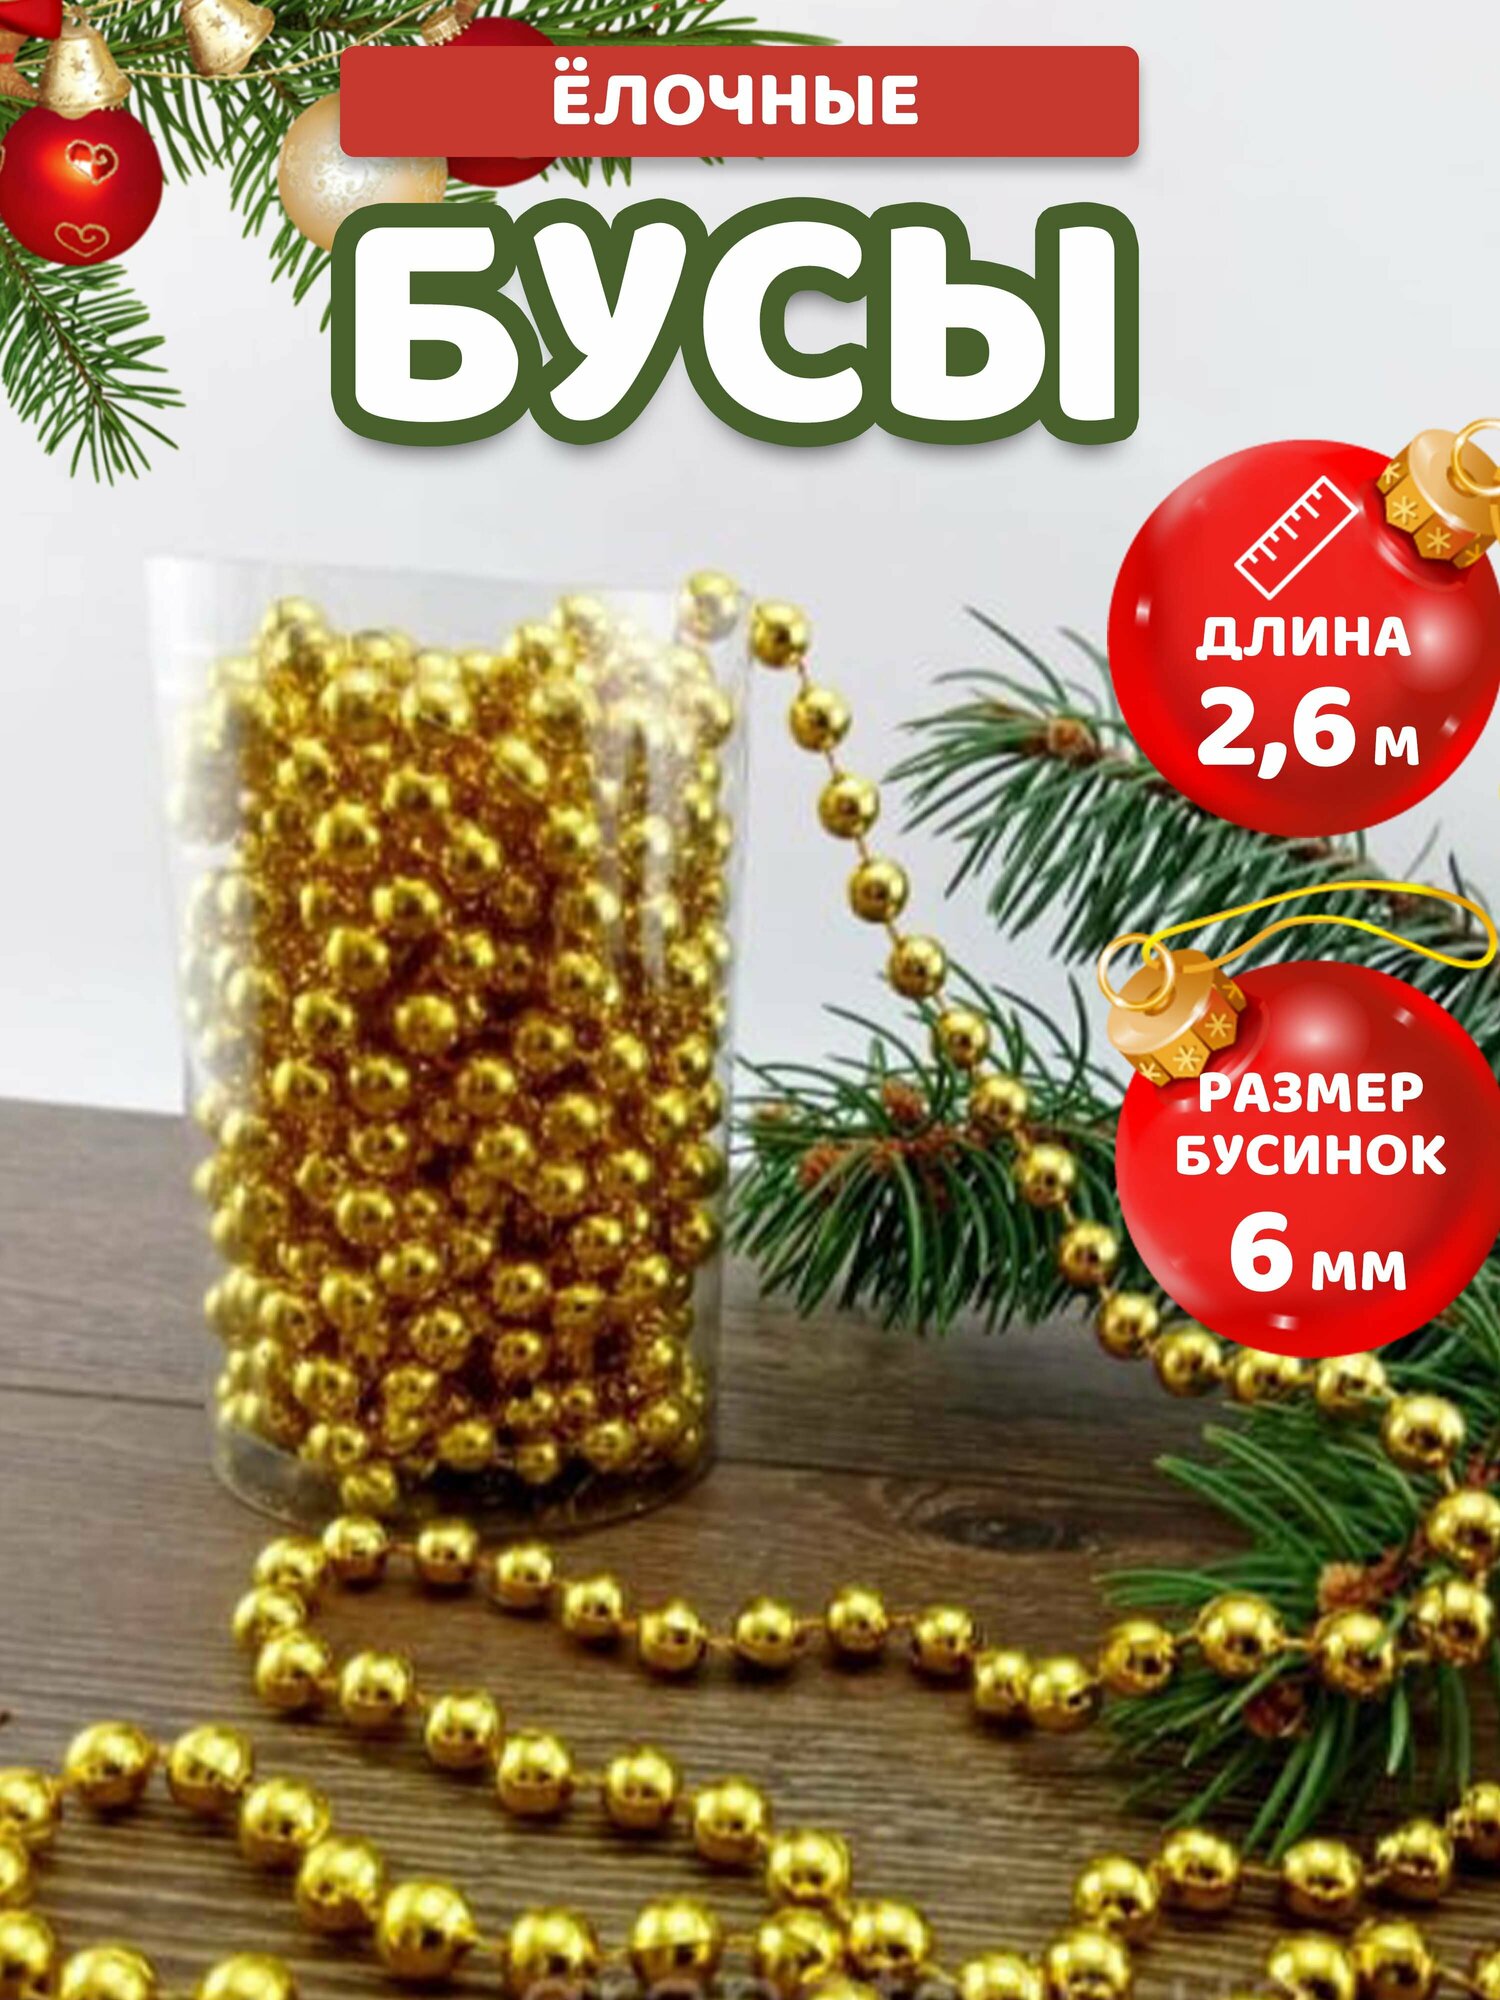 Бусы ёлочные новогоднее украшение 26 метра золотистые круглые 6мм диаметр Kanzmag